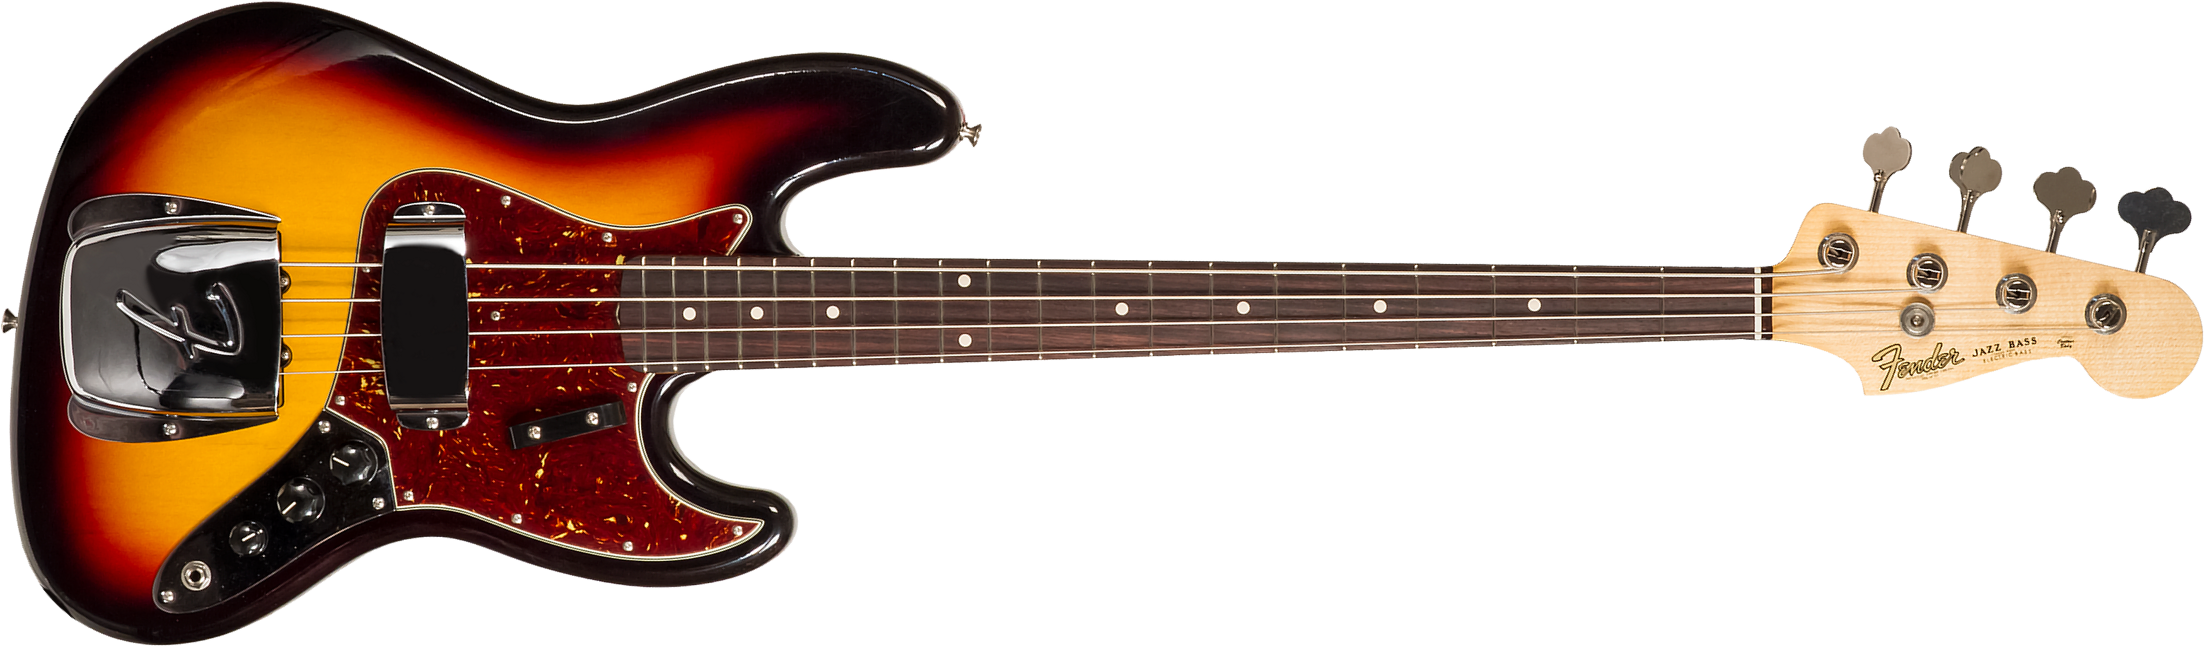 Fender Custom Shop Jazz Bass 1964 Rw #r129293 - Closet Classic 3-color Sunburst - Basse Électrique Solid Body - Main picture